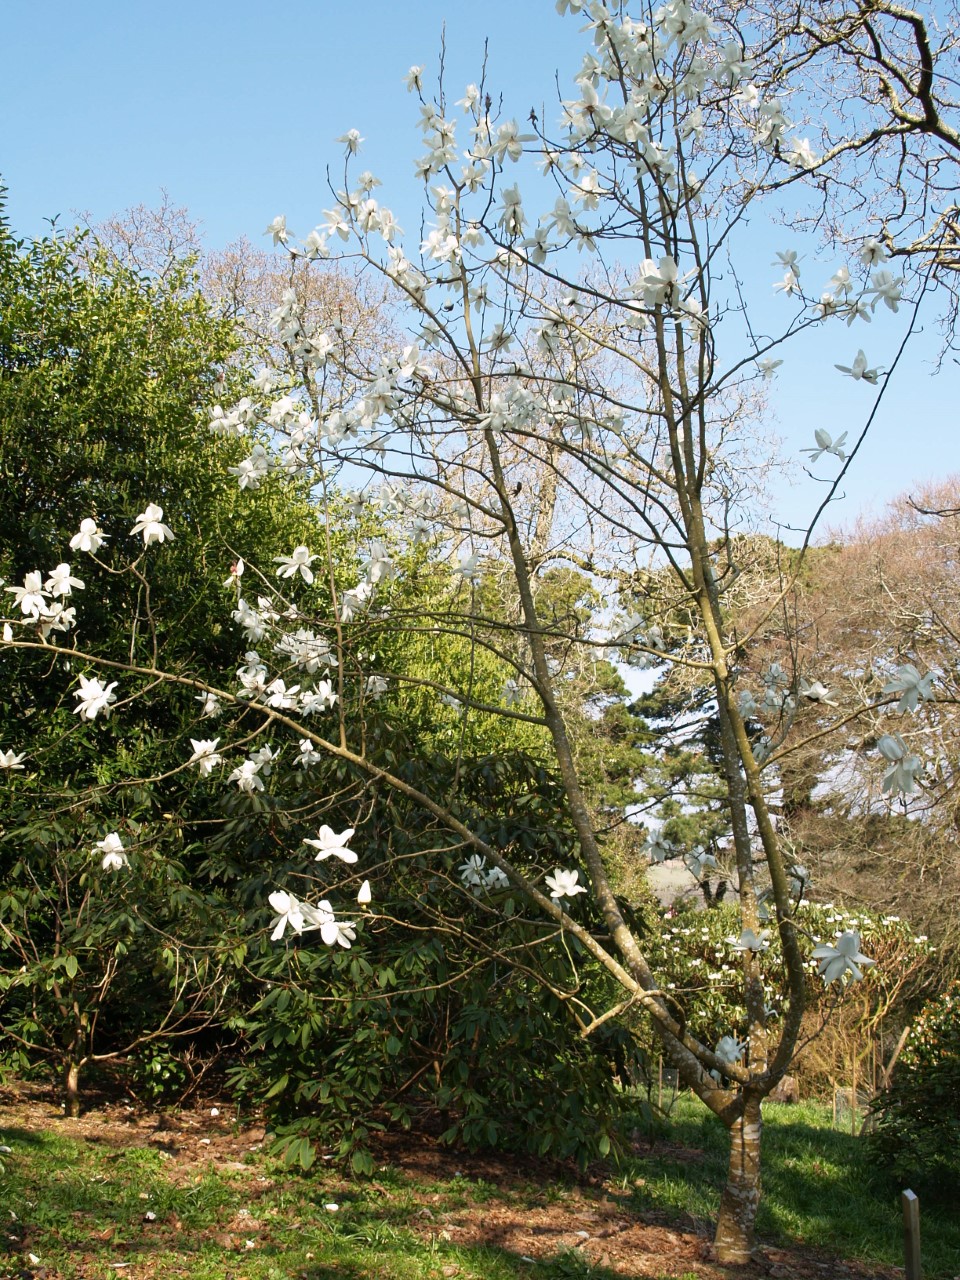 Magnolia campbellii alba